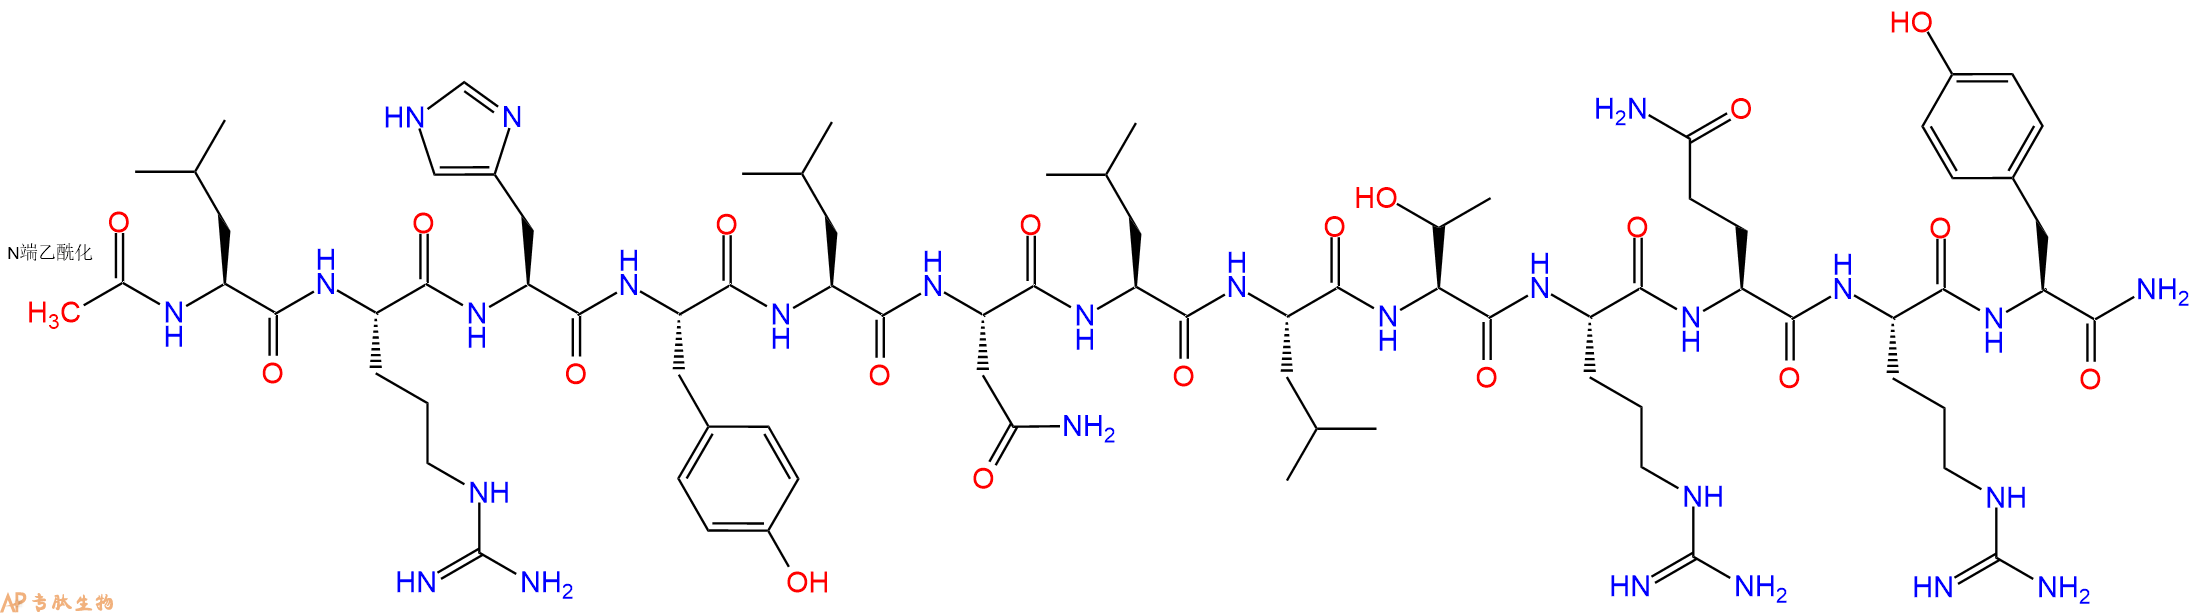 专肽生物产品神经肽Y Ac-[Leu28, 31]Neuro Peptide Y(24-36), human155709-24-3